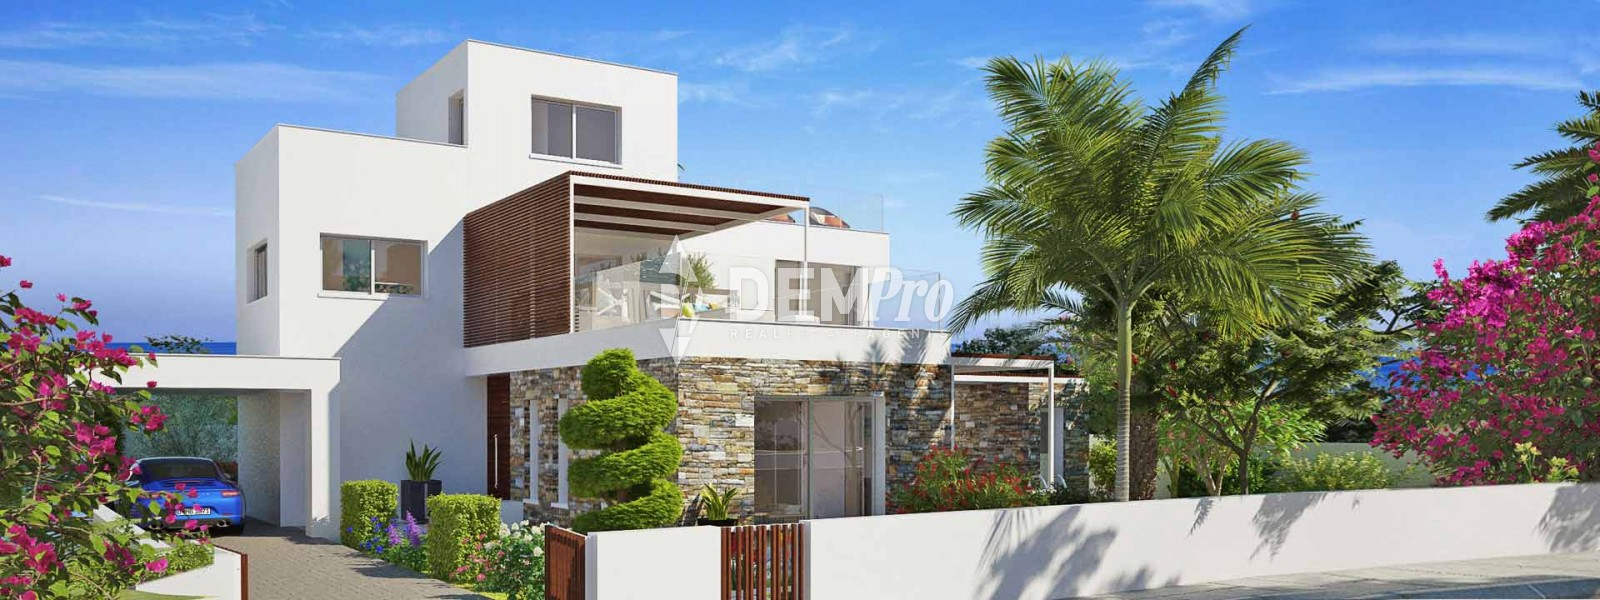 Villa For Sale in Yeroskipou, Paphos - DP2486